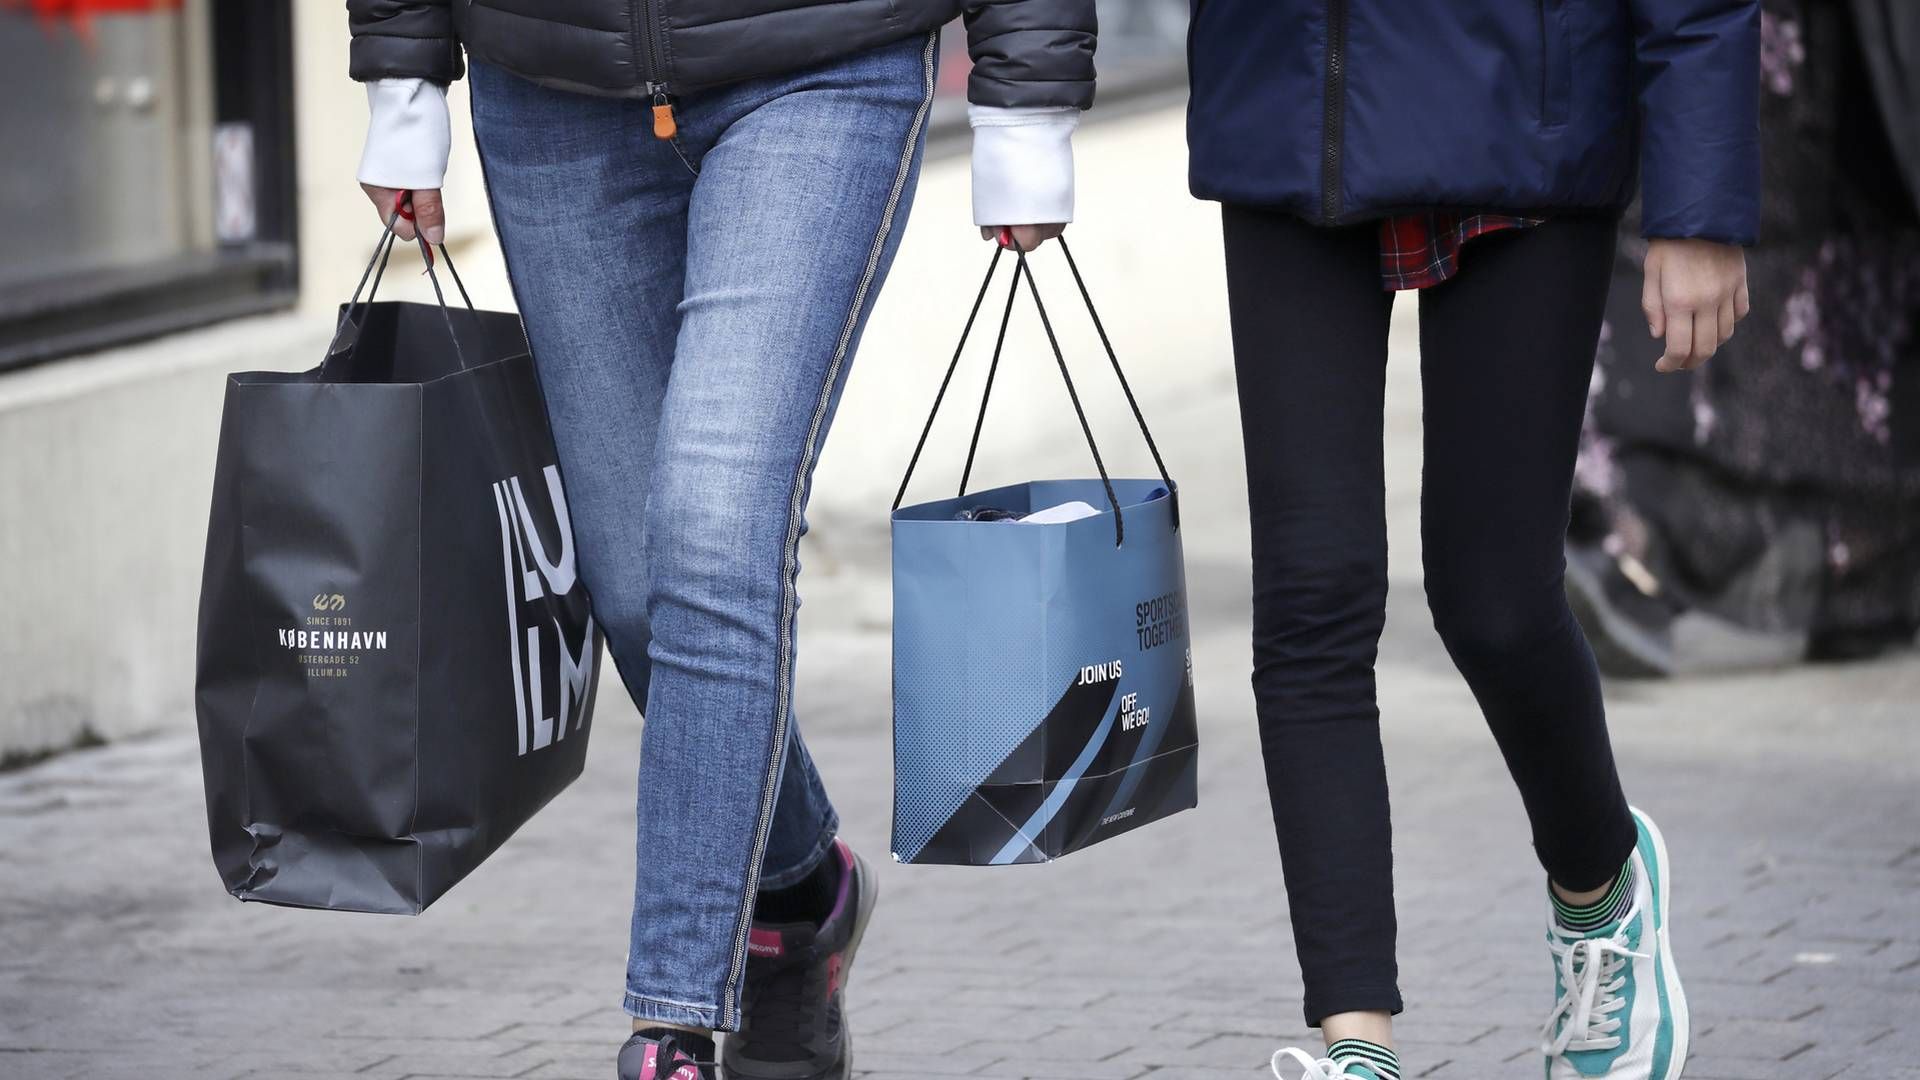 Forbrugertilliden fortsætter med at styrtdykke, og det kan gå ud over detailbranchen. | Foto: Jens Dresling